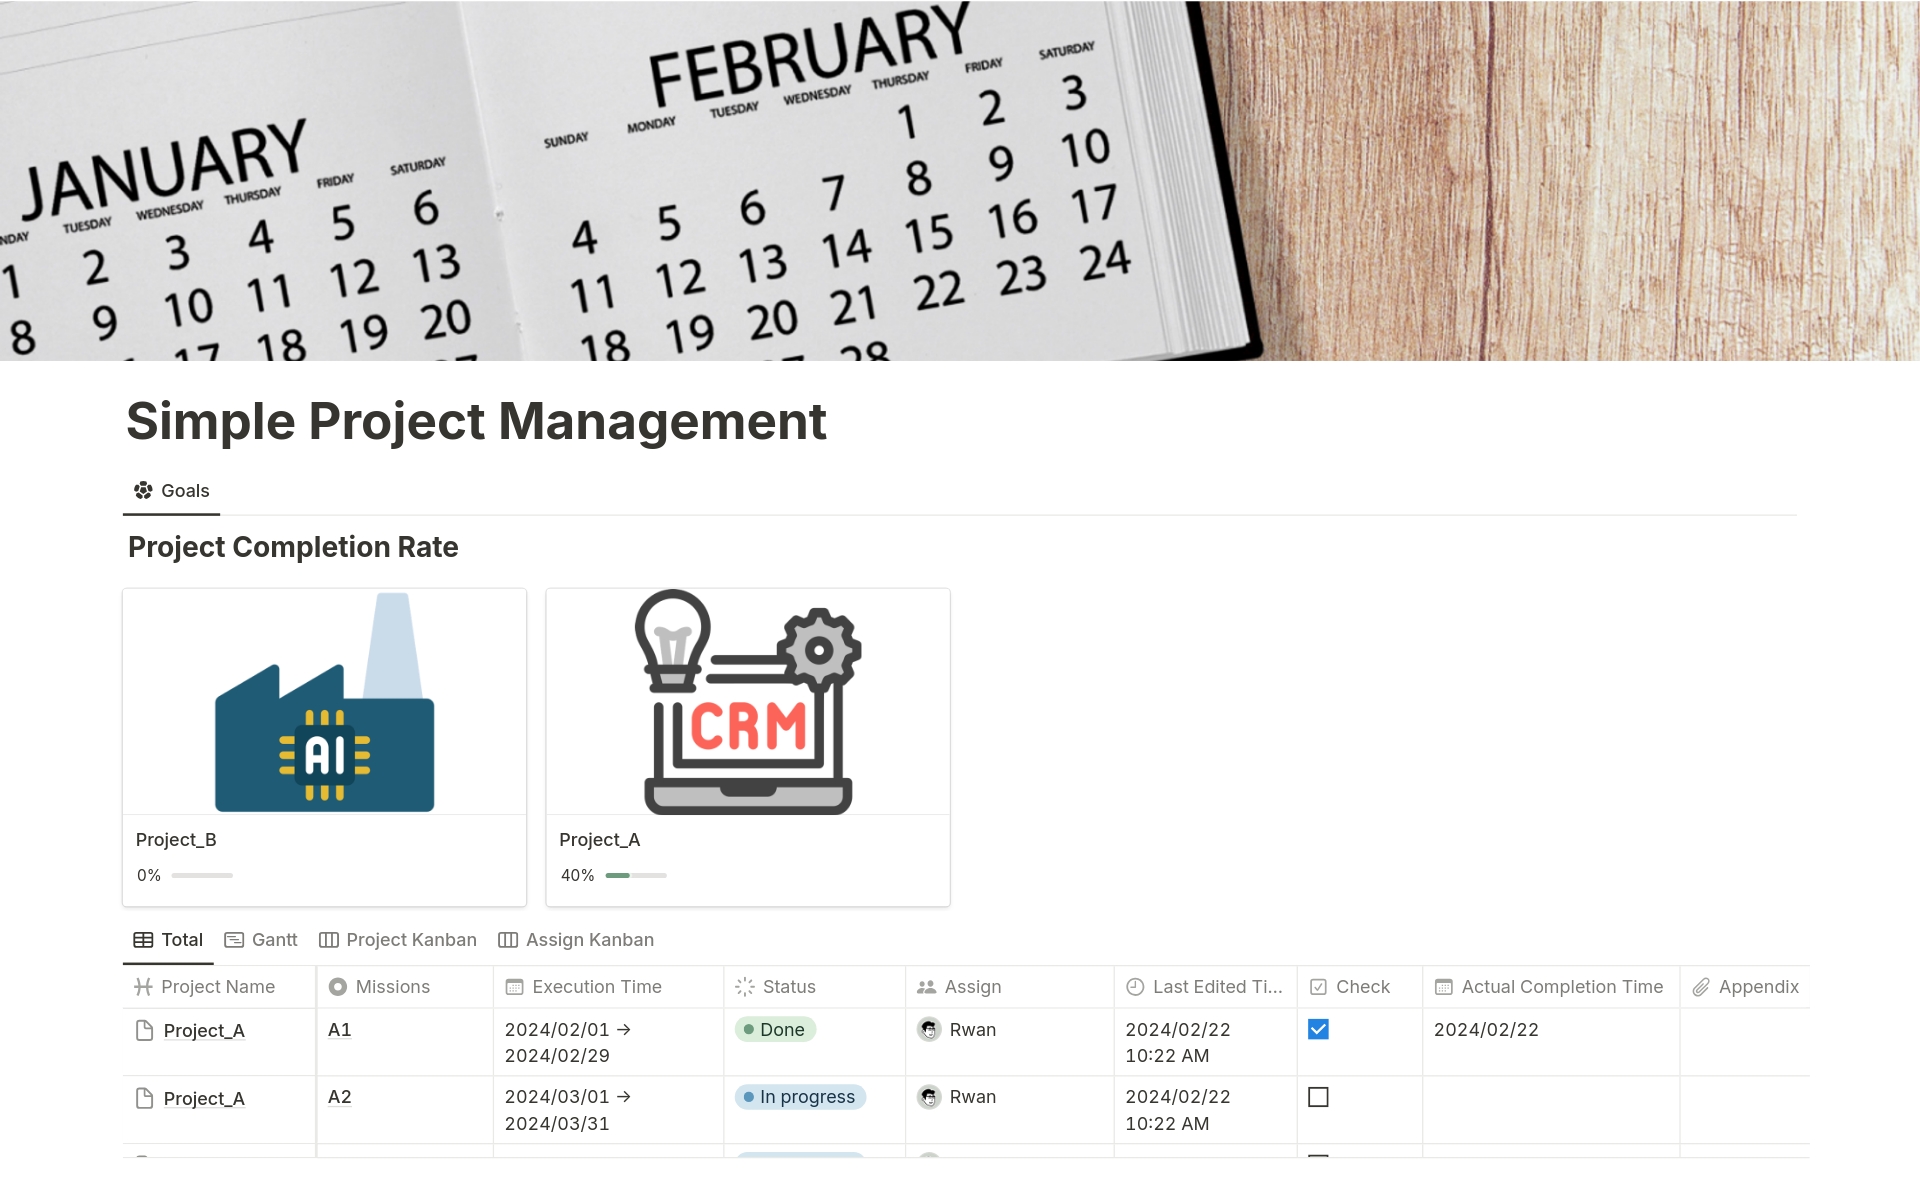 Vista previa de una plantilla para Simple Project Management